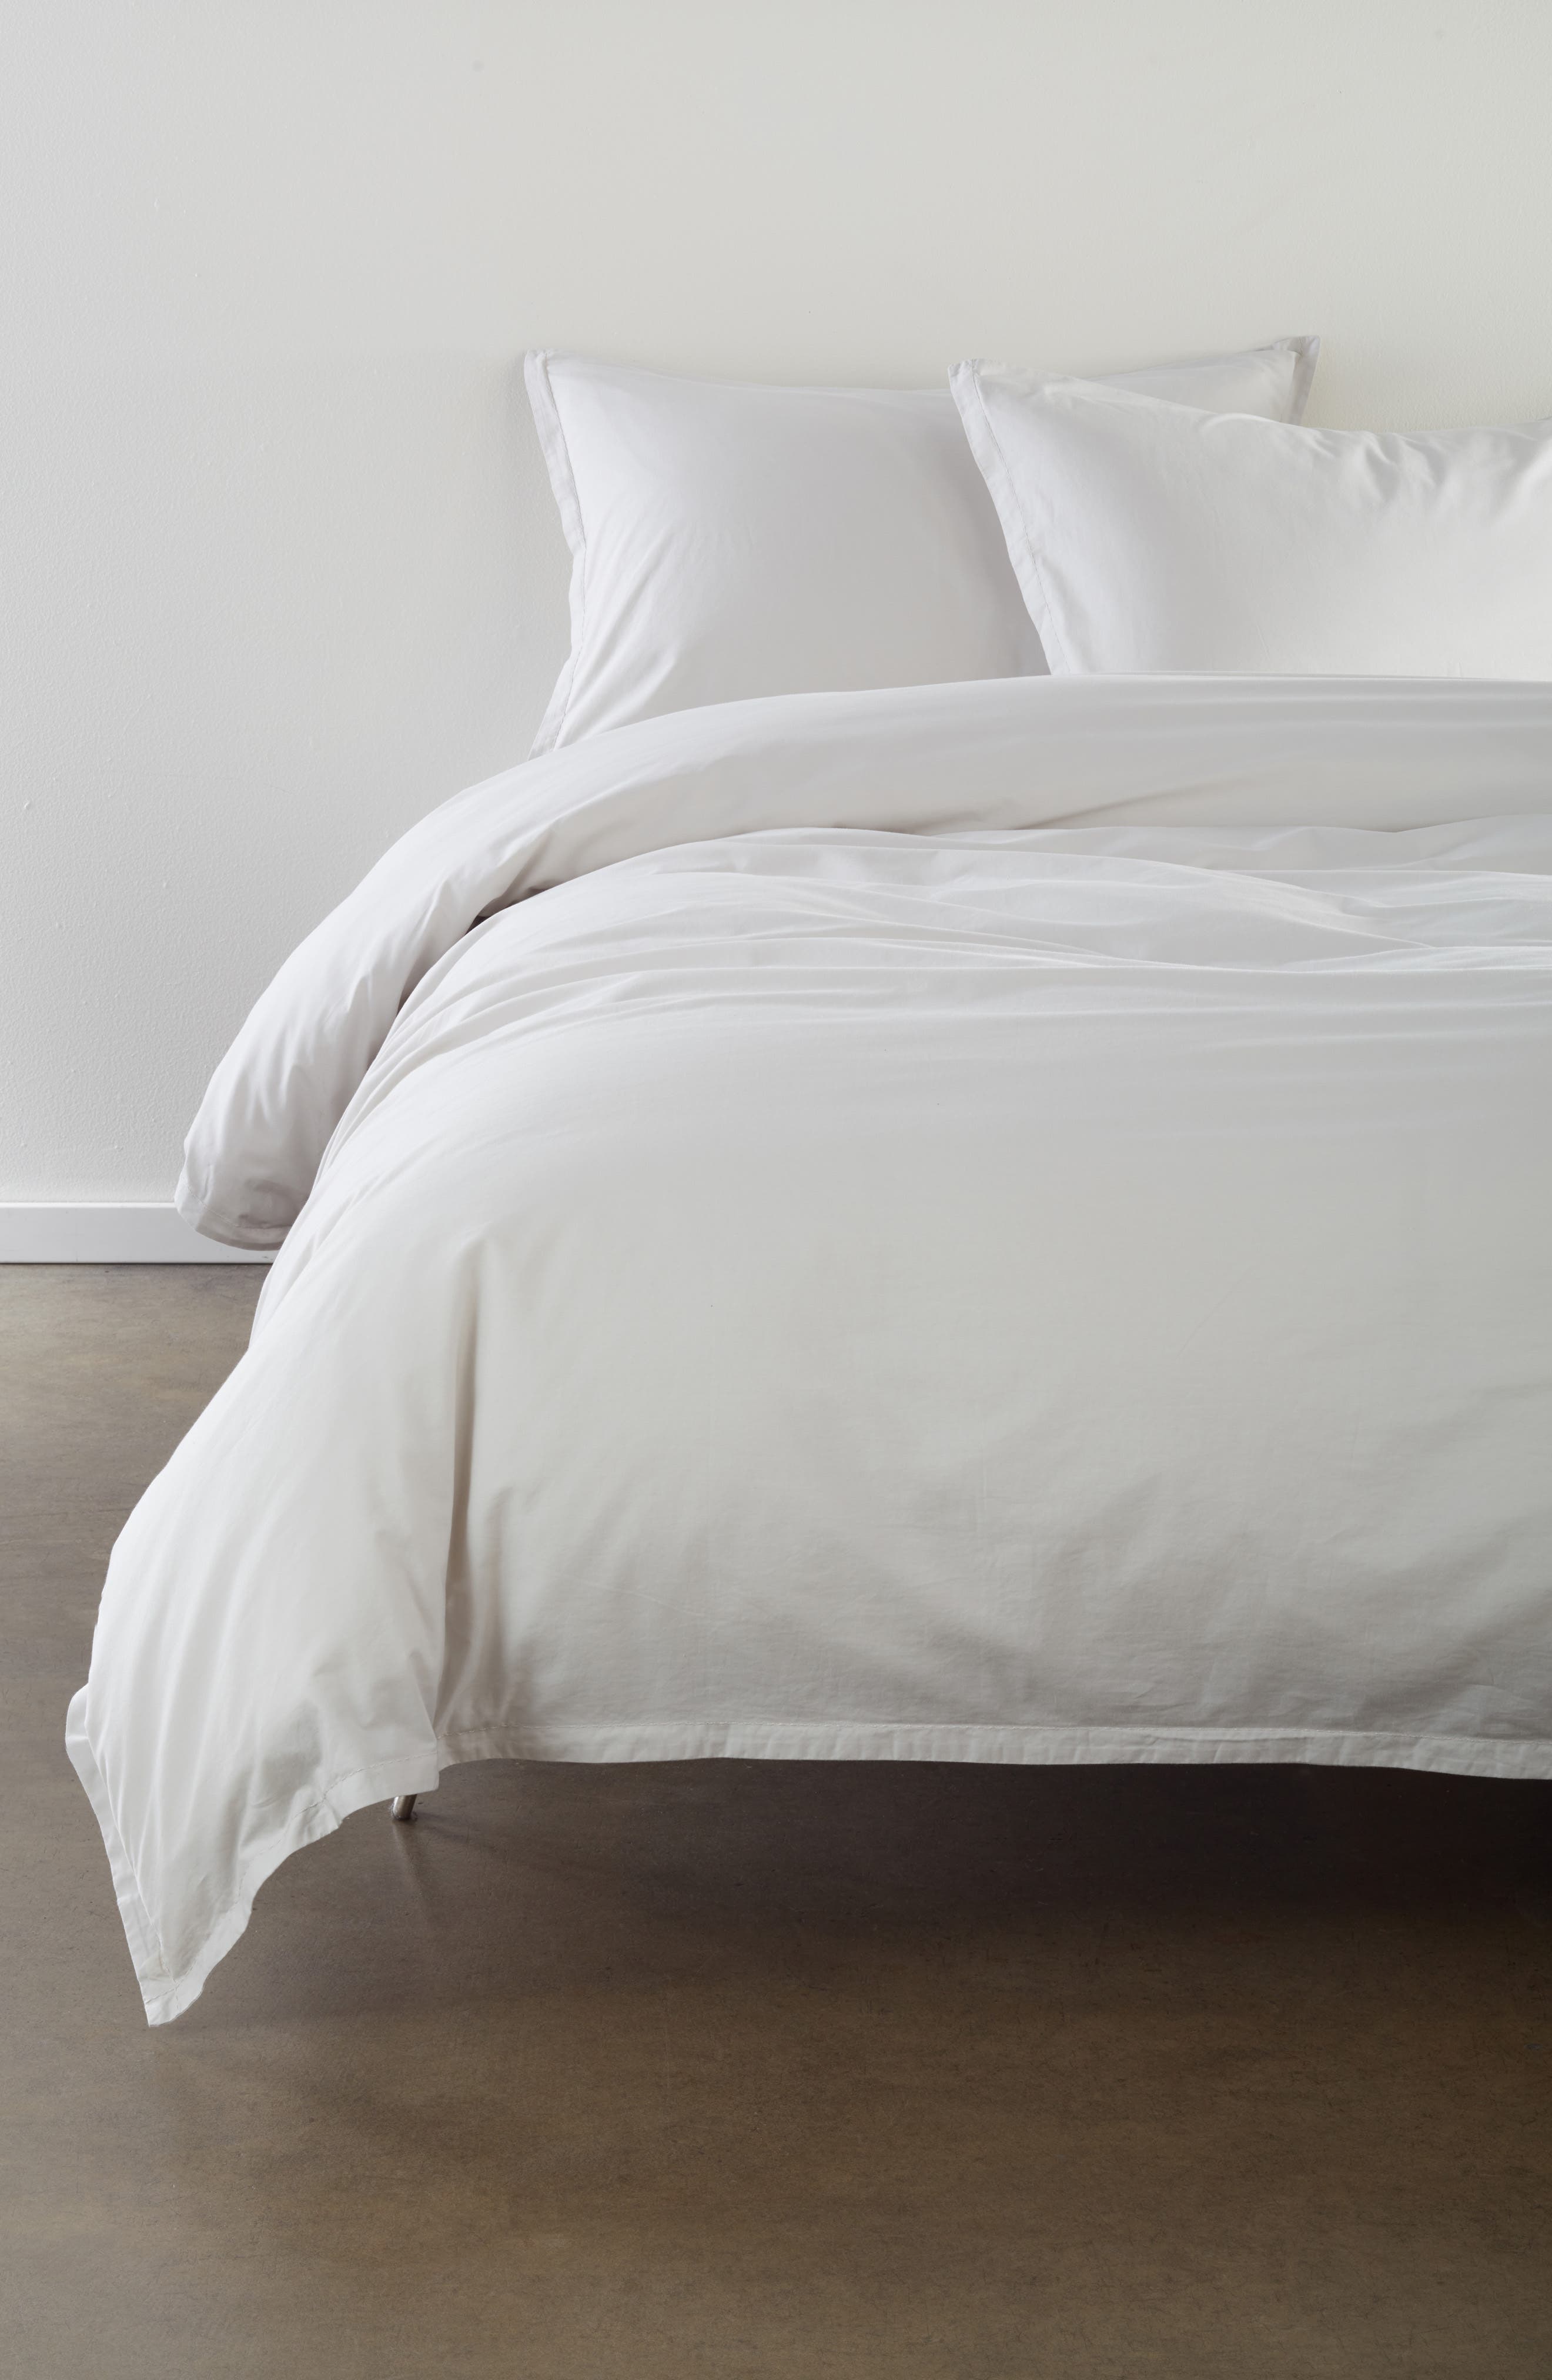 Duvet Cover for Apartment Home Full Size,Grey Pom Pom Bedding